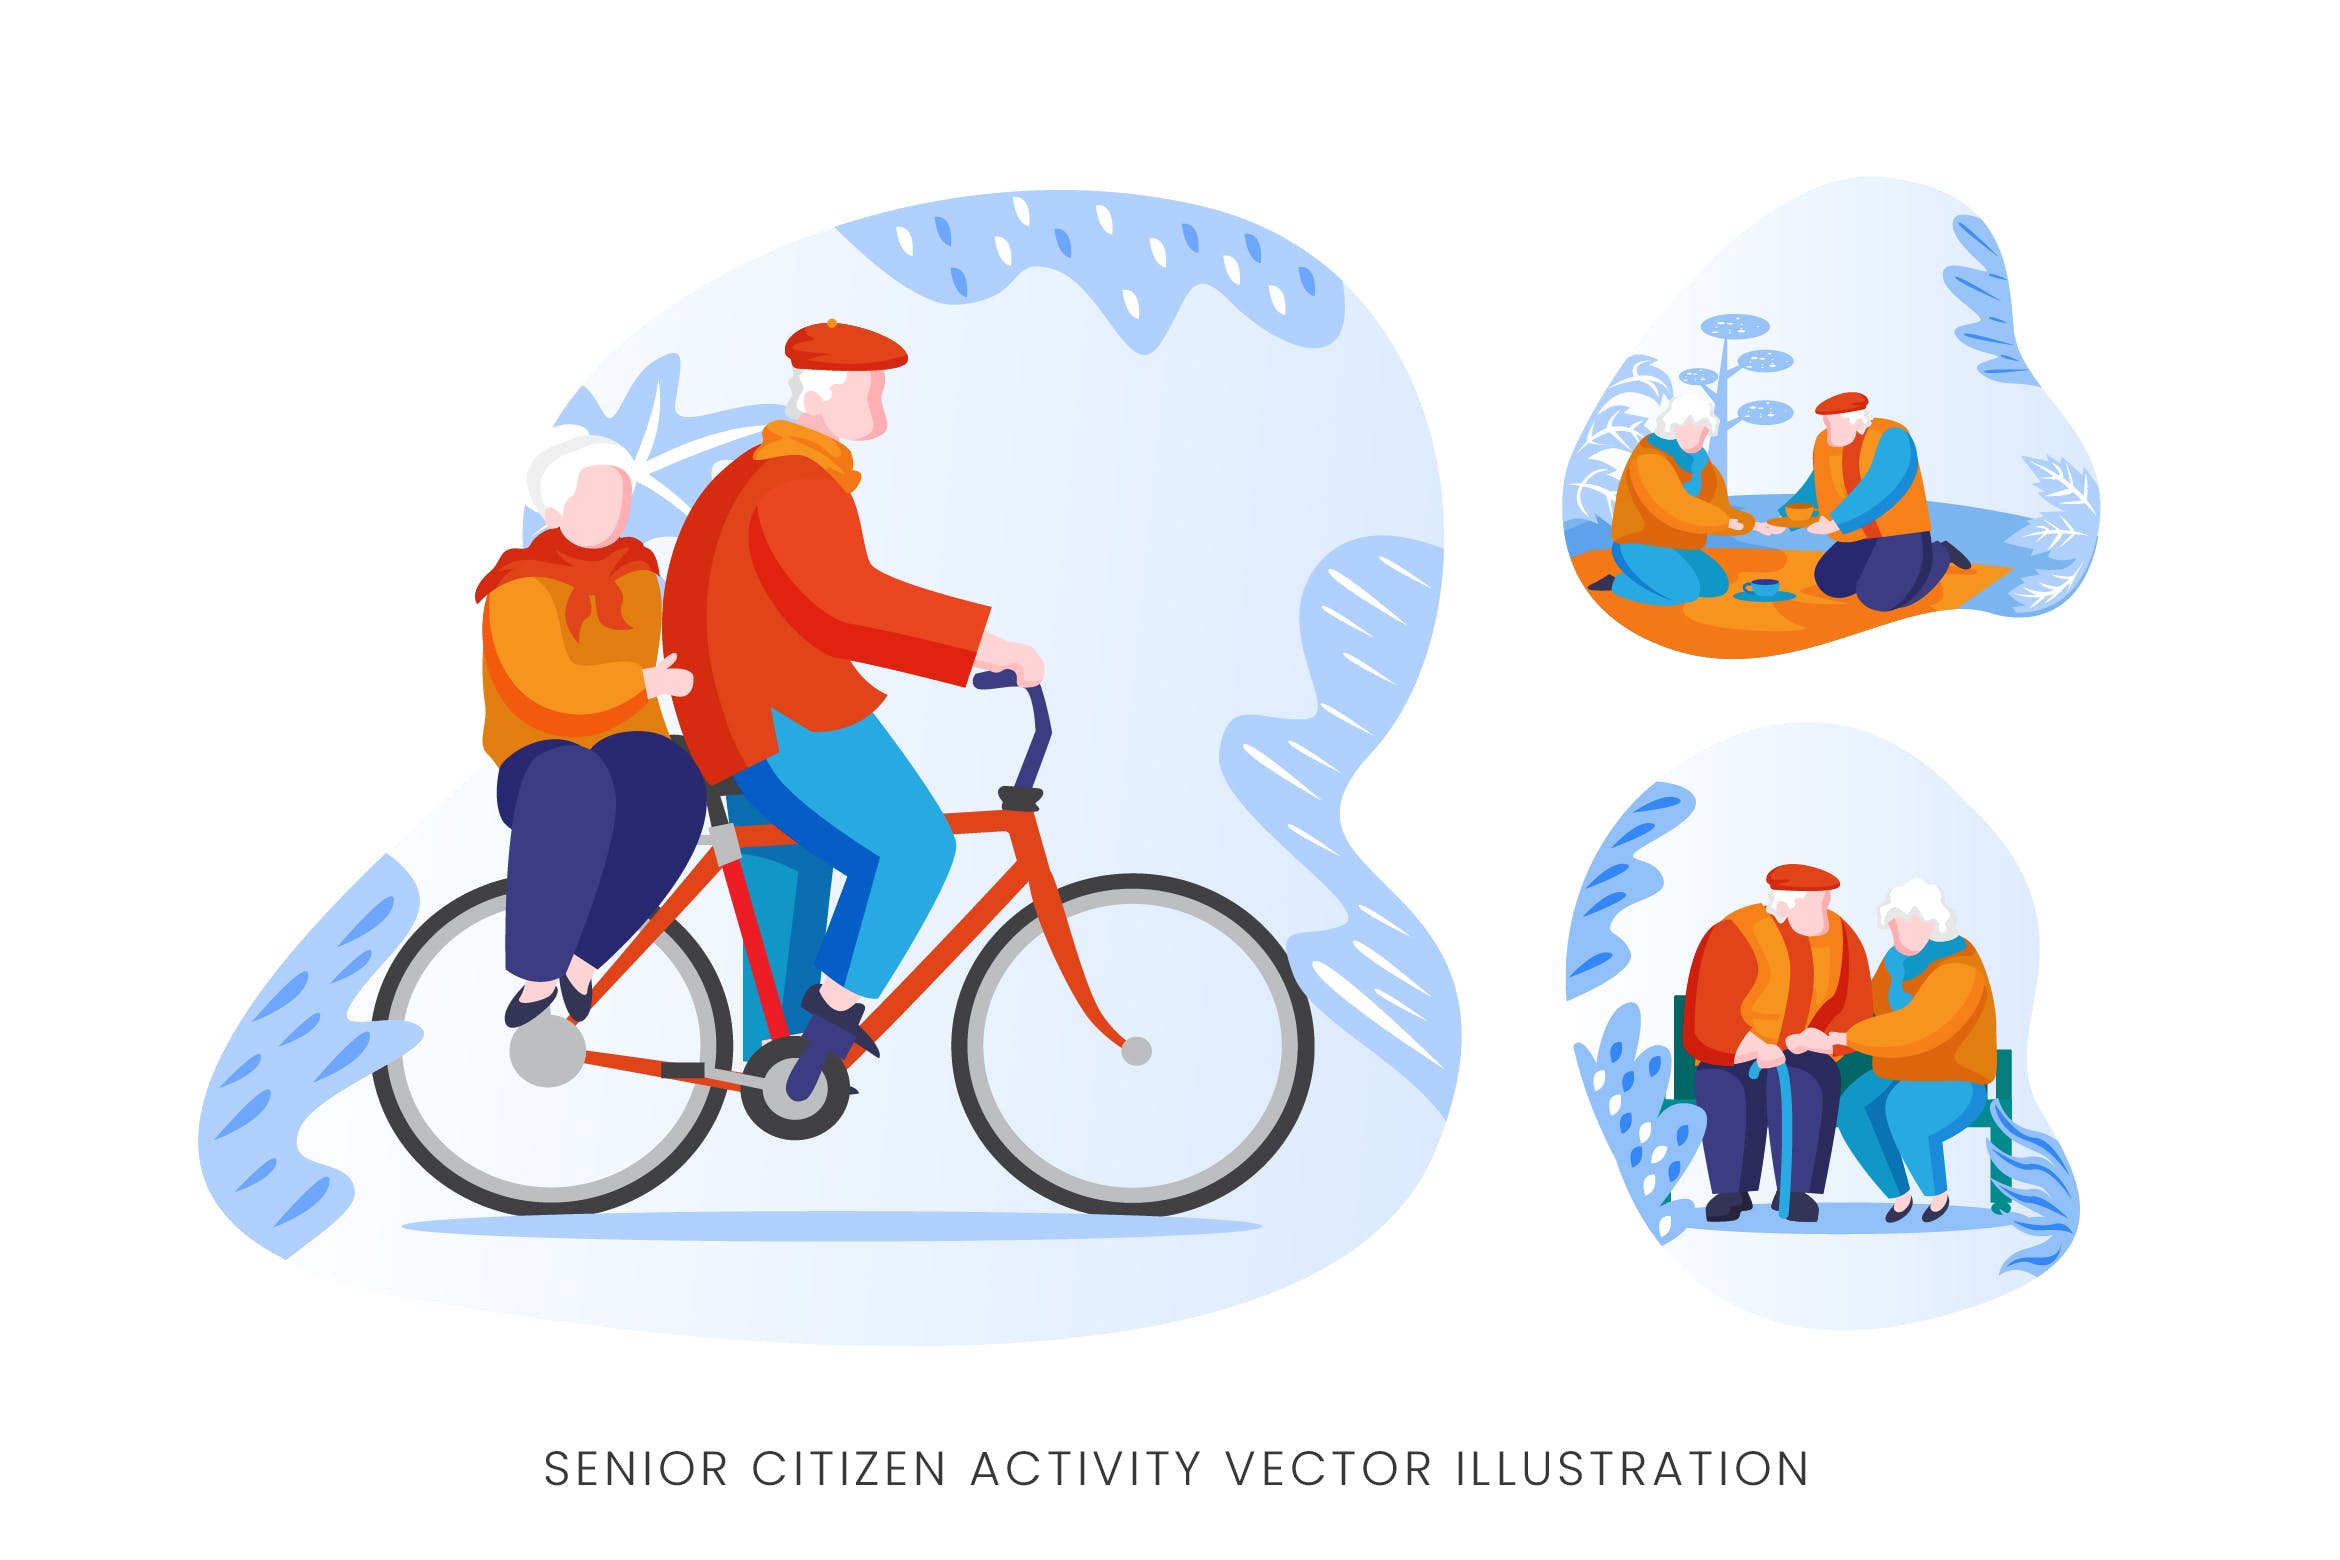 老年人生活人物形象矢量手绘素材中国精选设计素材 Senior Citizen Vector Character Set插图